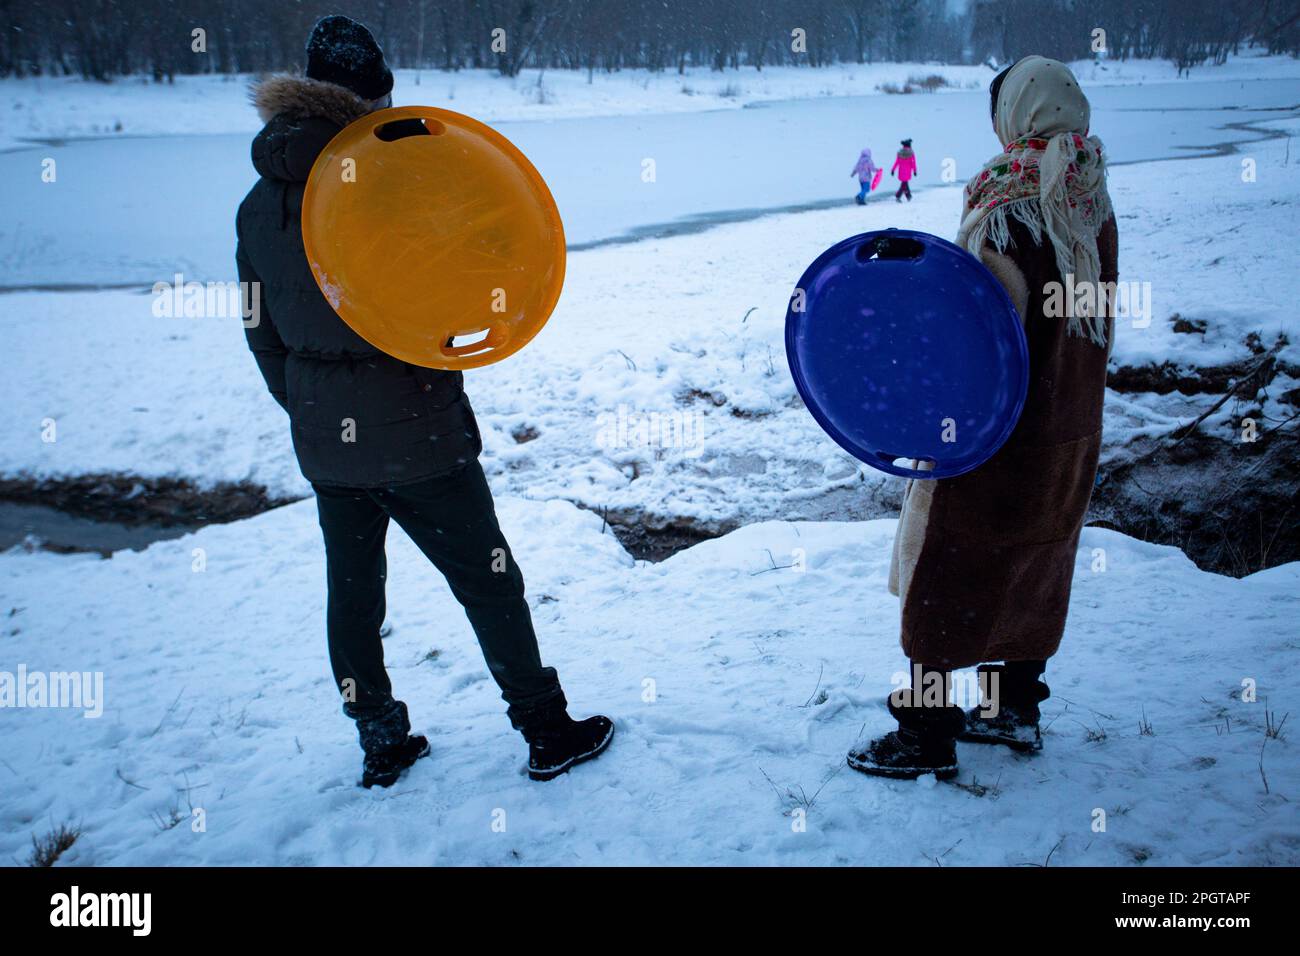 Friedliches Wochenende. Eltern in Kiew halten große Plastikteller, um im Schnee bergab zu fahren, beobachten ihre Kinder beim Spazierengehen am Ufer des gefrorenen Sees Stockfoto